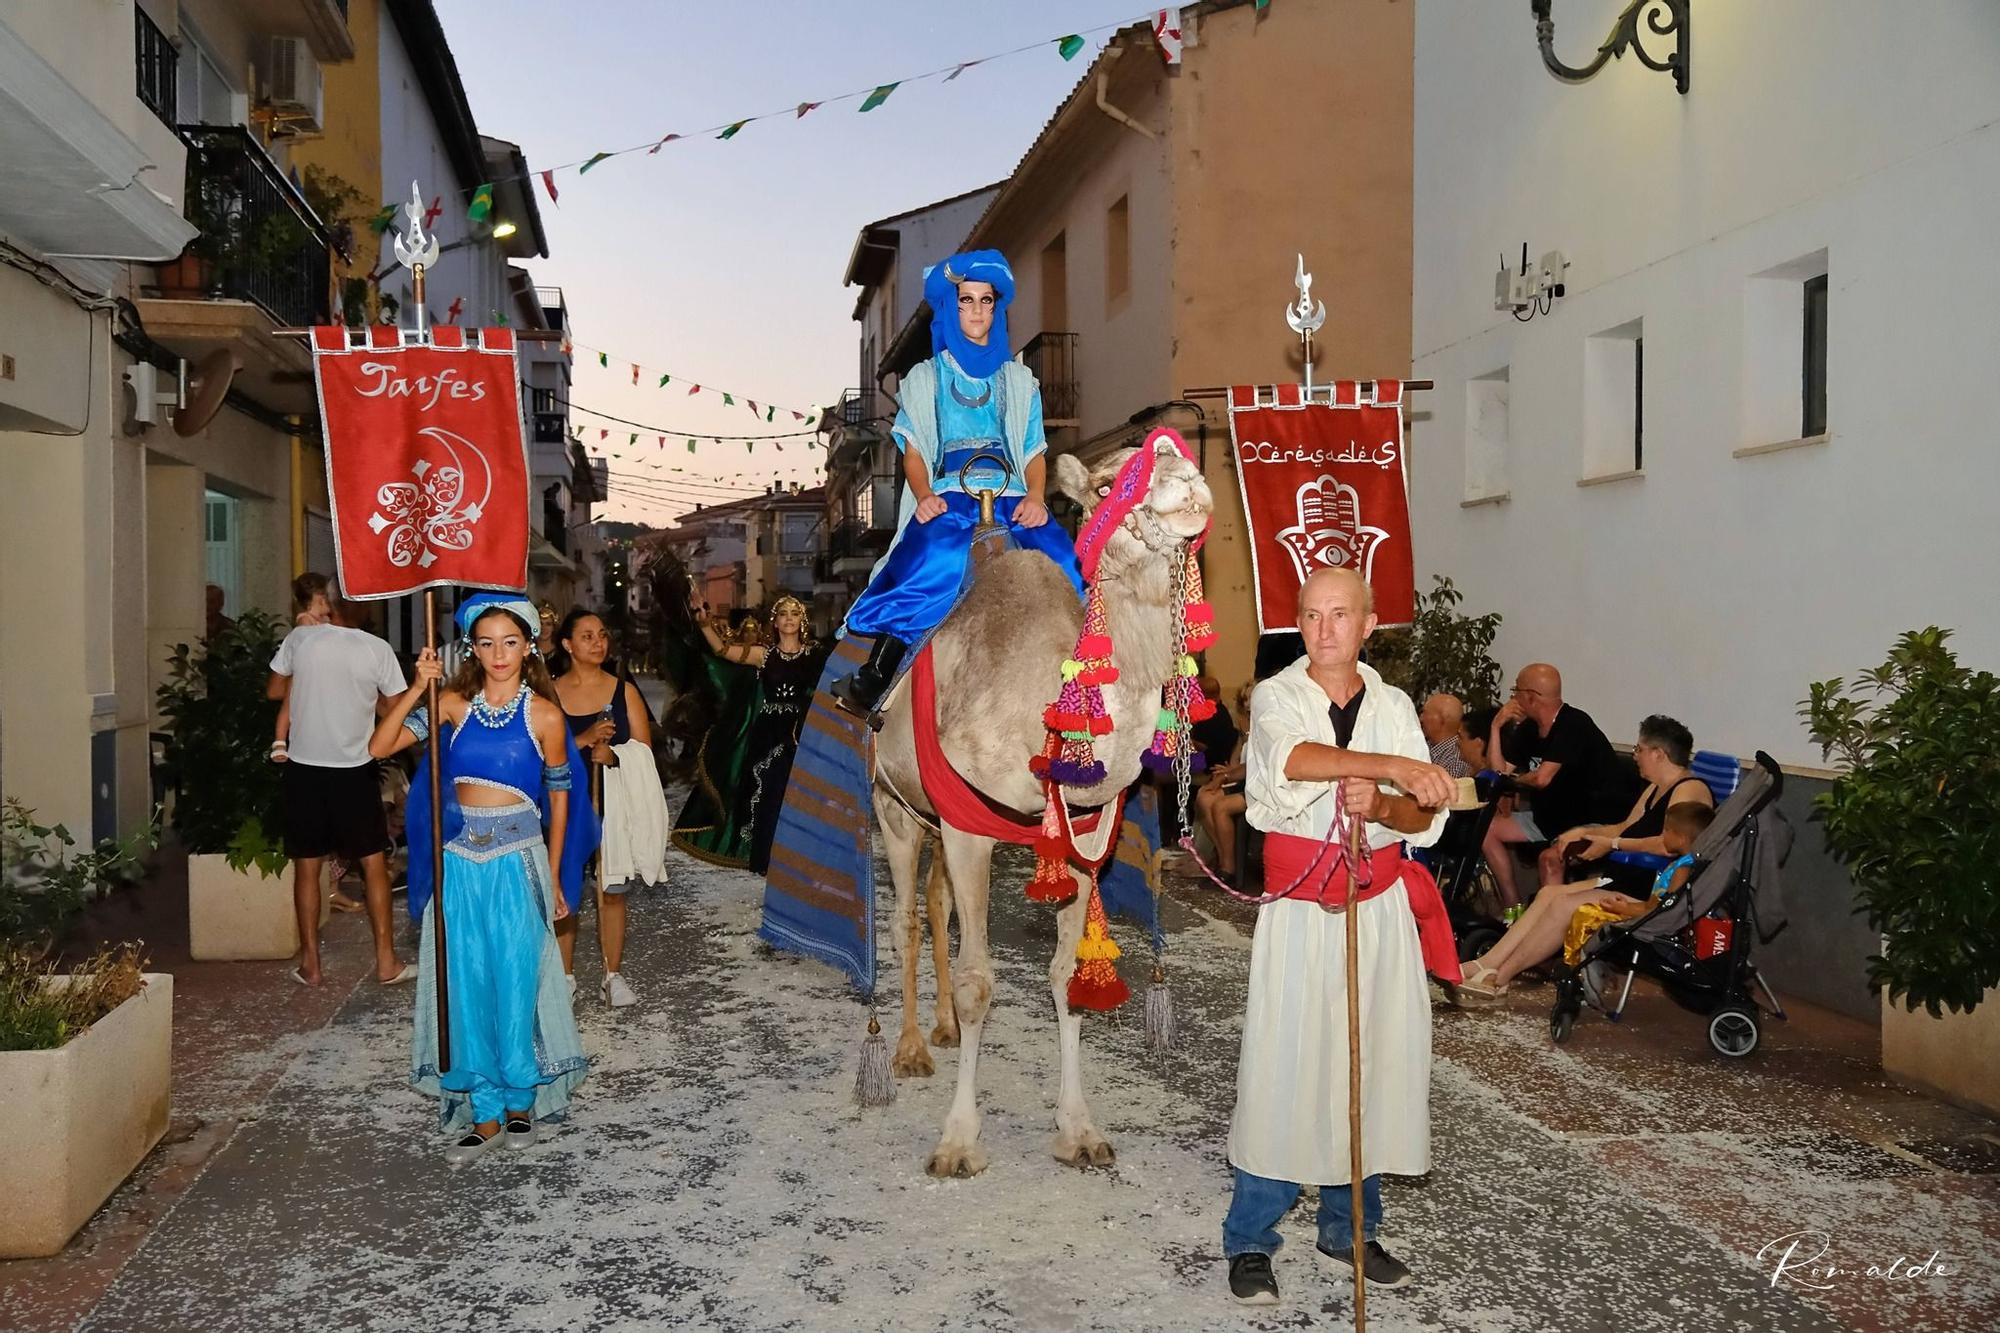 Les millors fotos de les Festes de Moros i Cristians de Xeresa